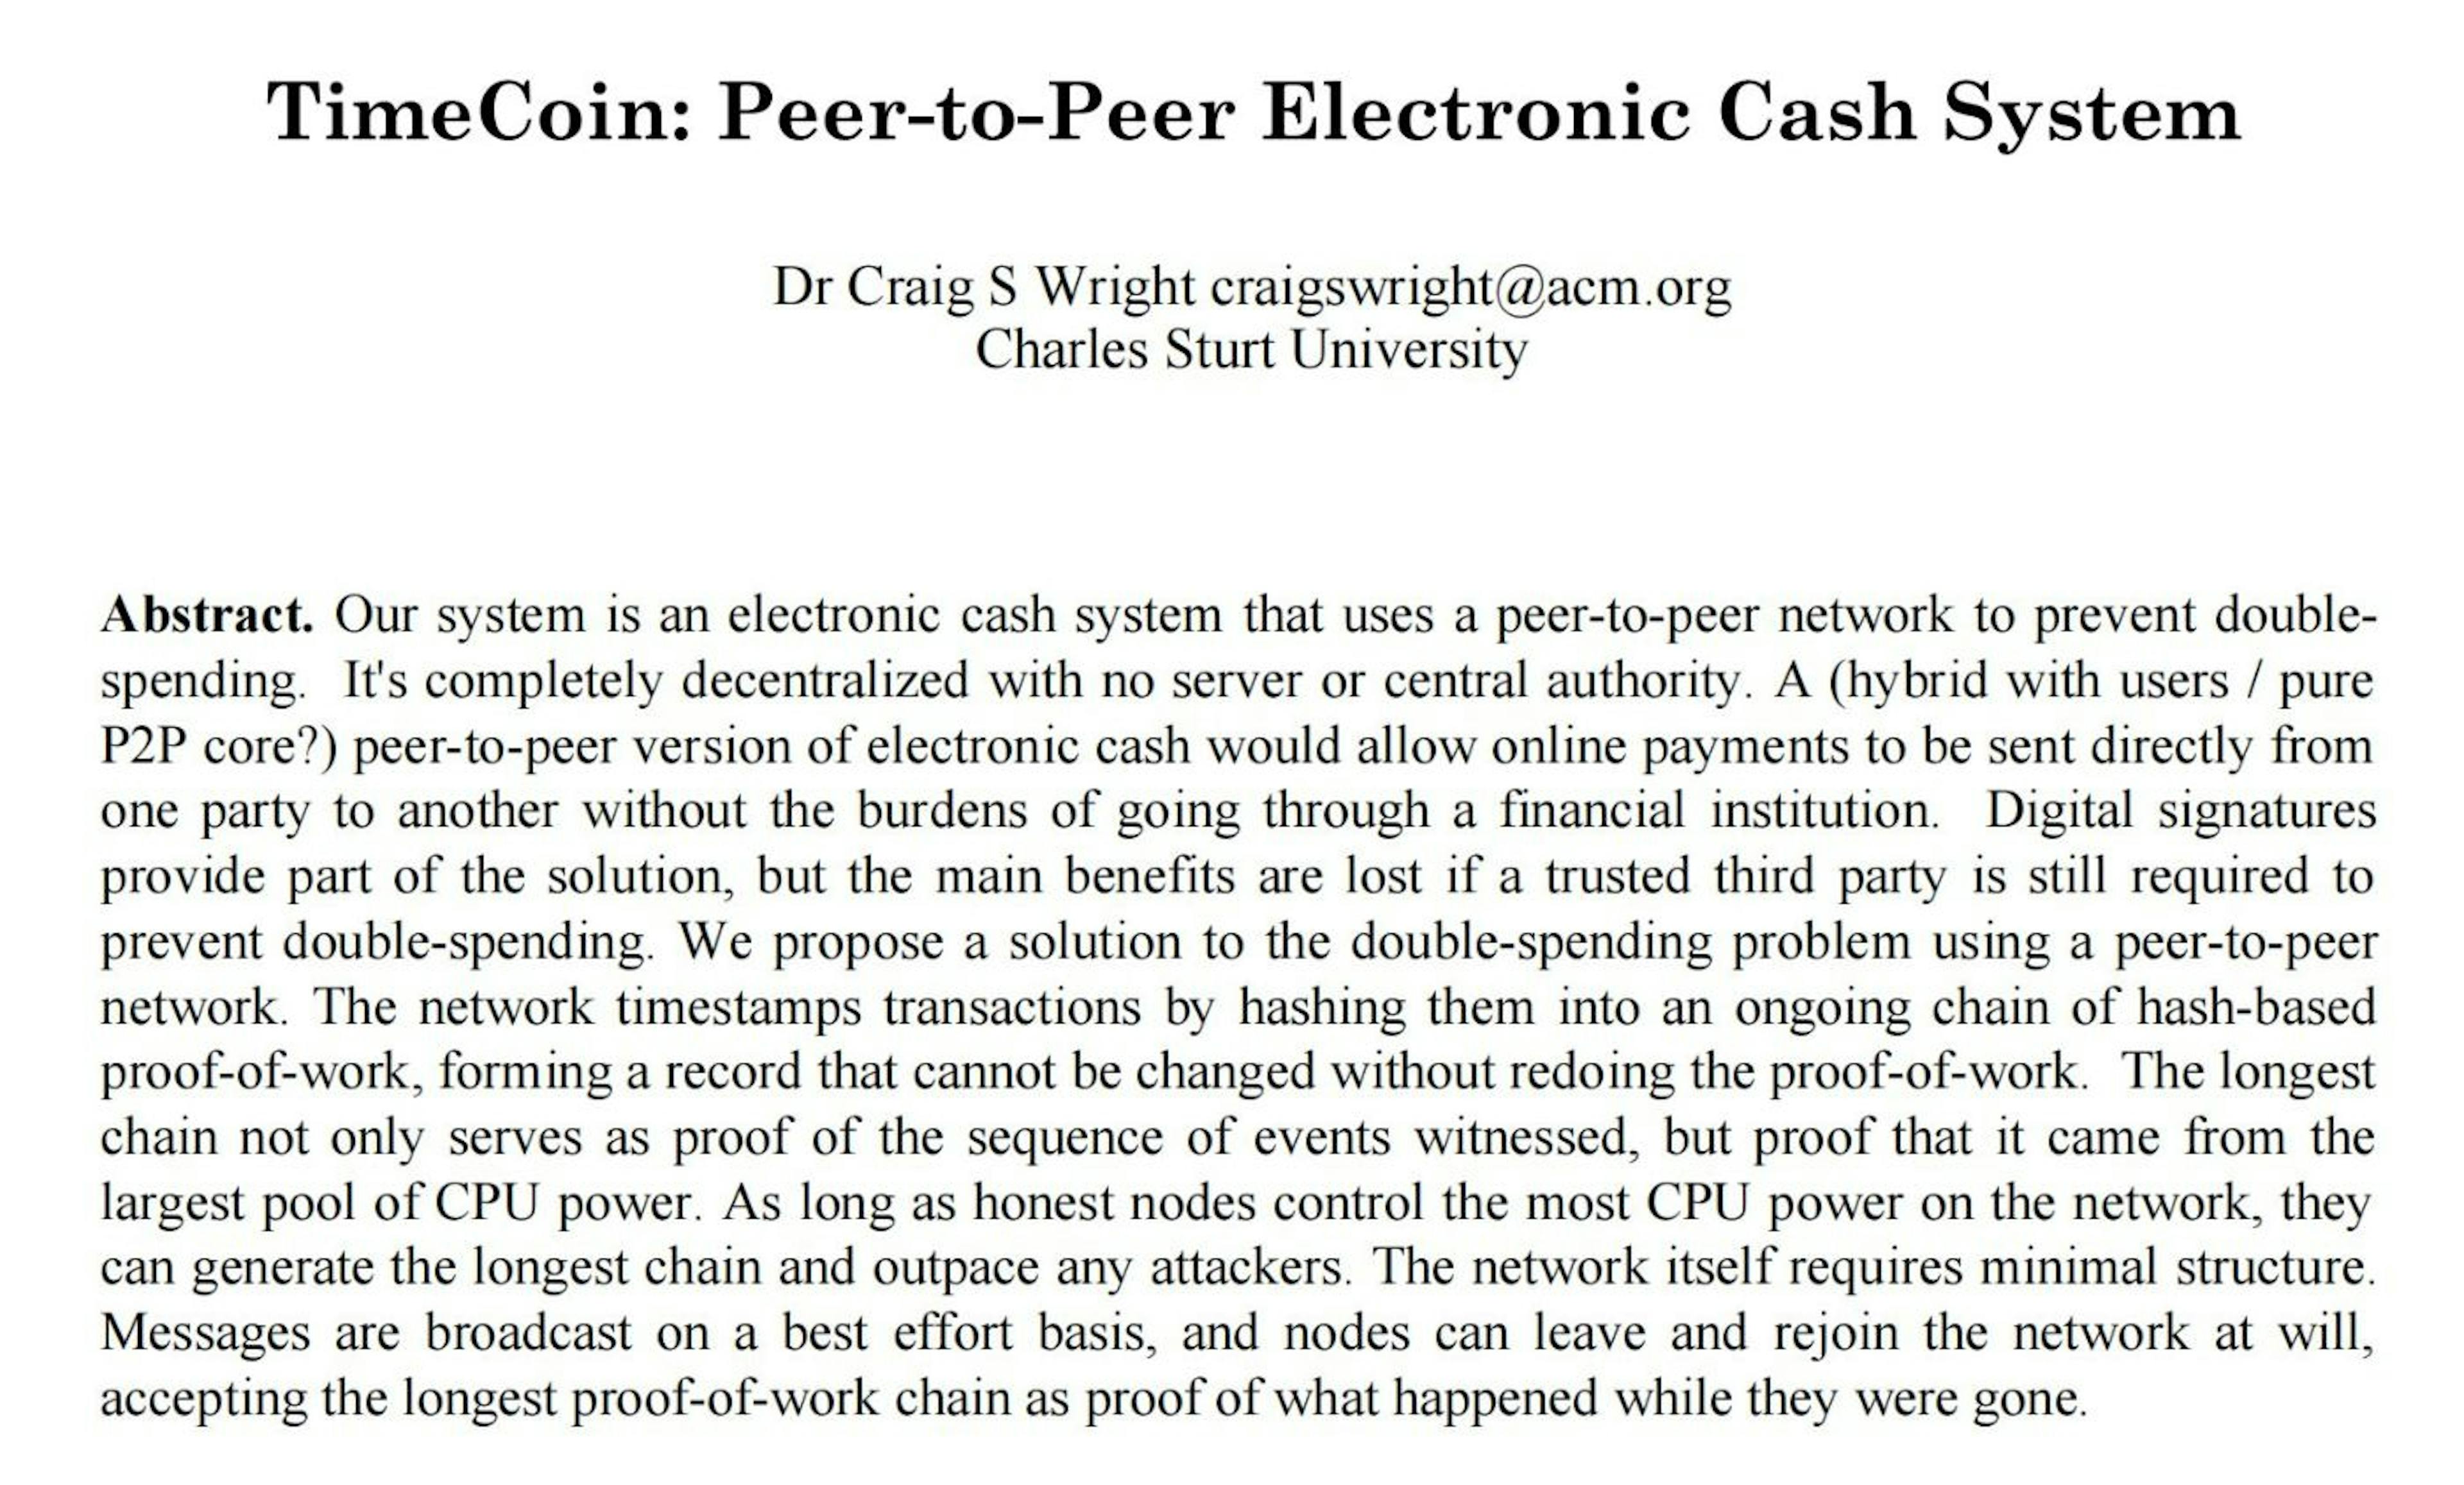 2019년에 Craig Wright는 bitcoin.org에서 공개적으로 사용 가능한 2009년 비트코인 백서 PDF 버전을 가져와서 2008년 초 비트코인 백서 초안처럼 보이도록 변경하려고 시도했습니다. 그의 단조 과정 중 일부는 비트코인을 TimeCoin으로 변경하고(웃음) 원본 PDF 파일의 메타데이터를 엉성하게 조정하는 것입니다.